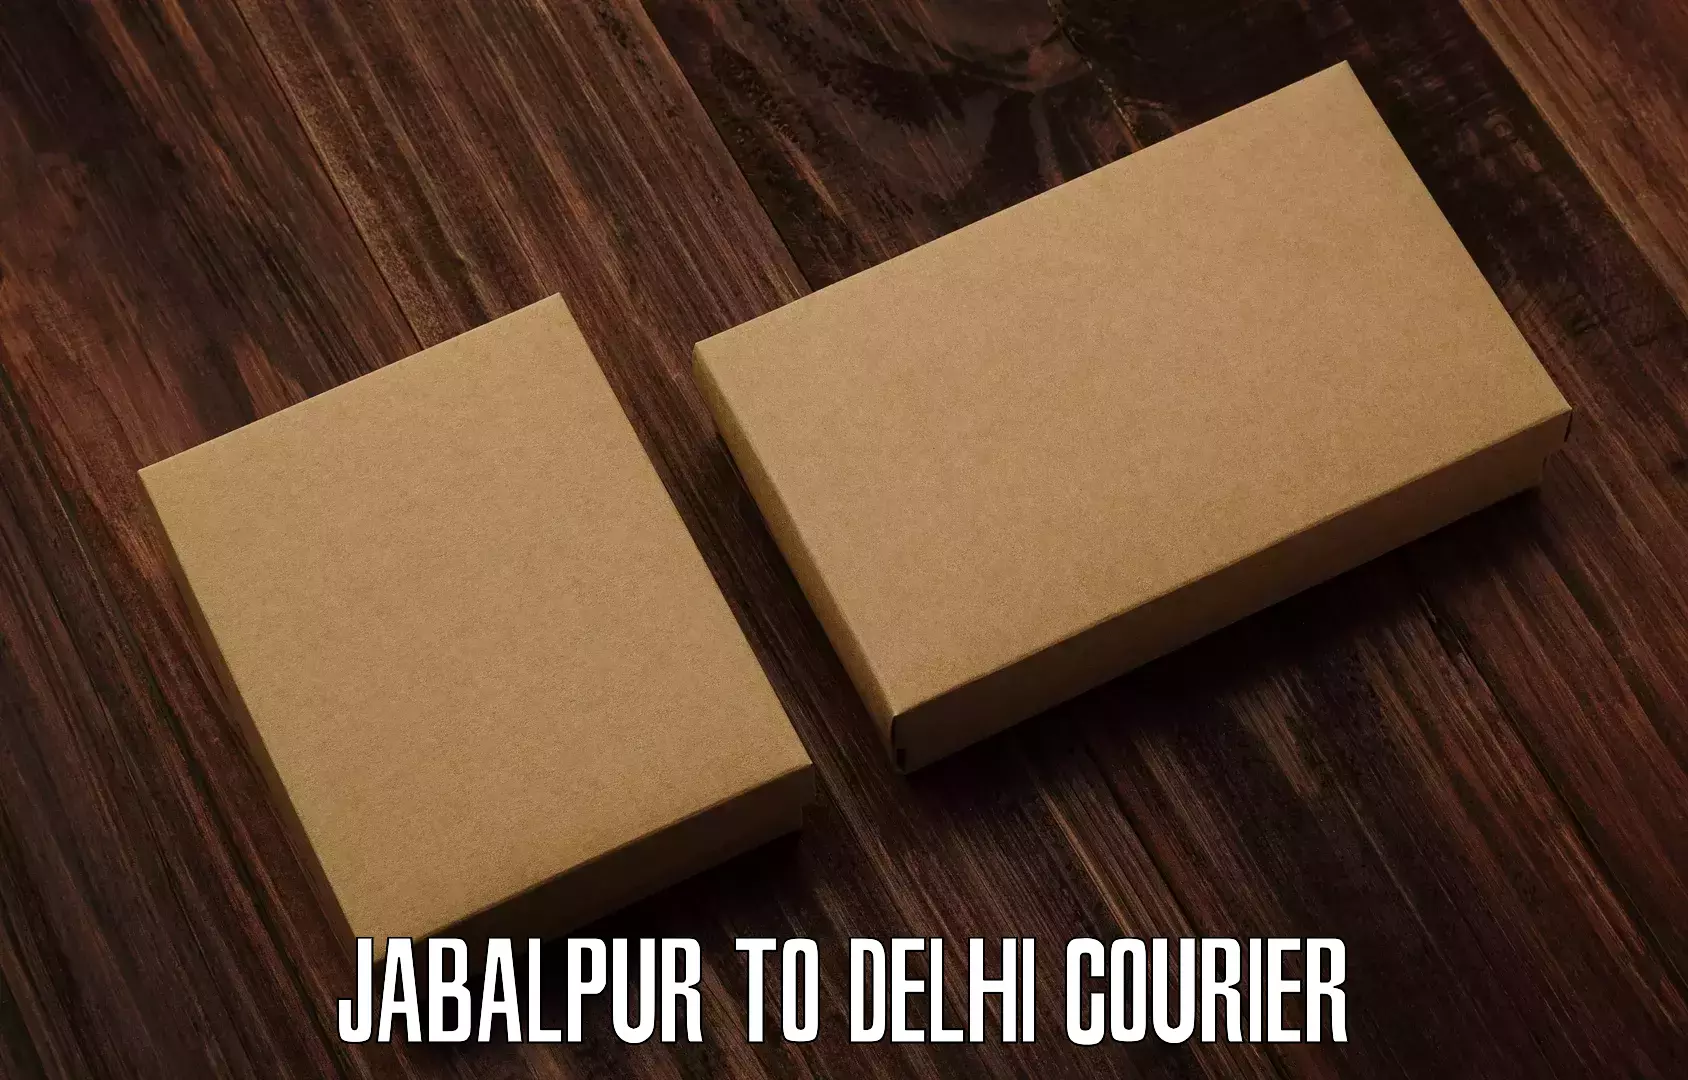 Courier service comparison Jabalpur to Lodhi Road